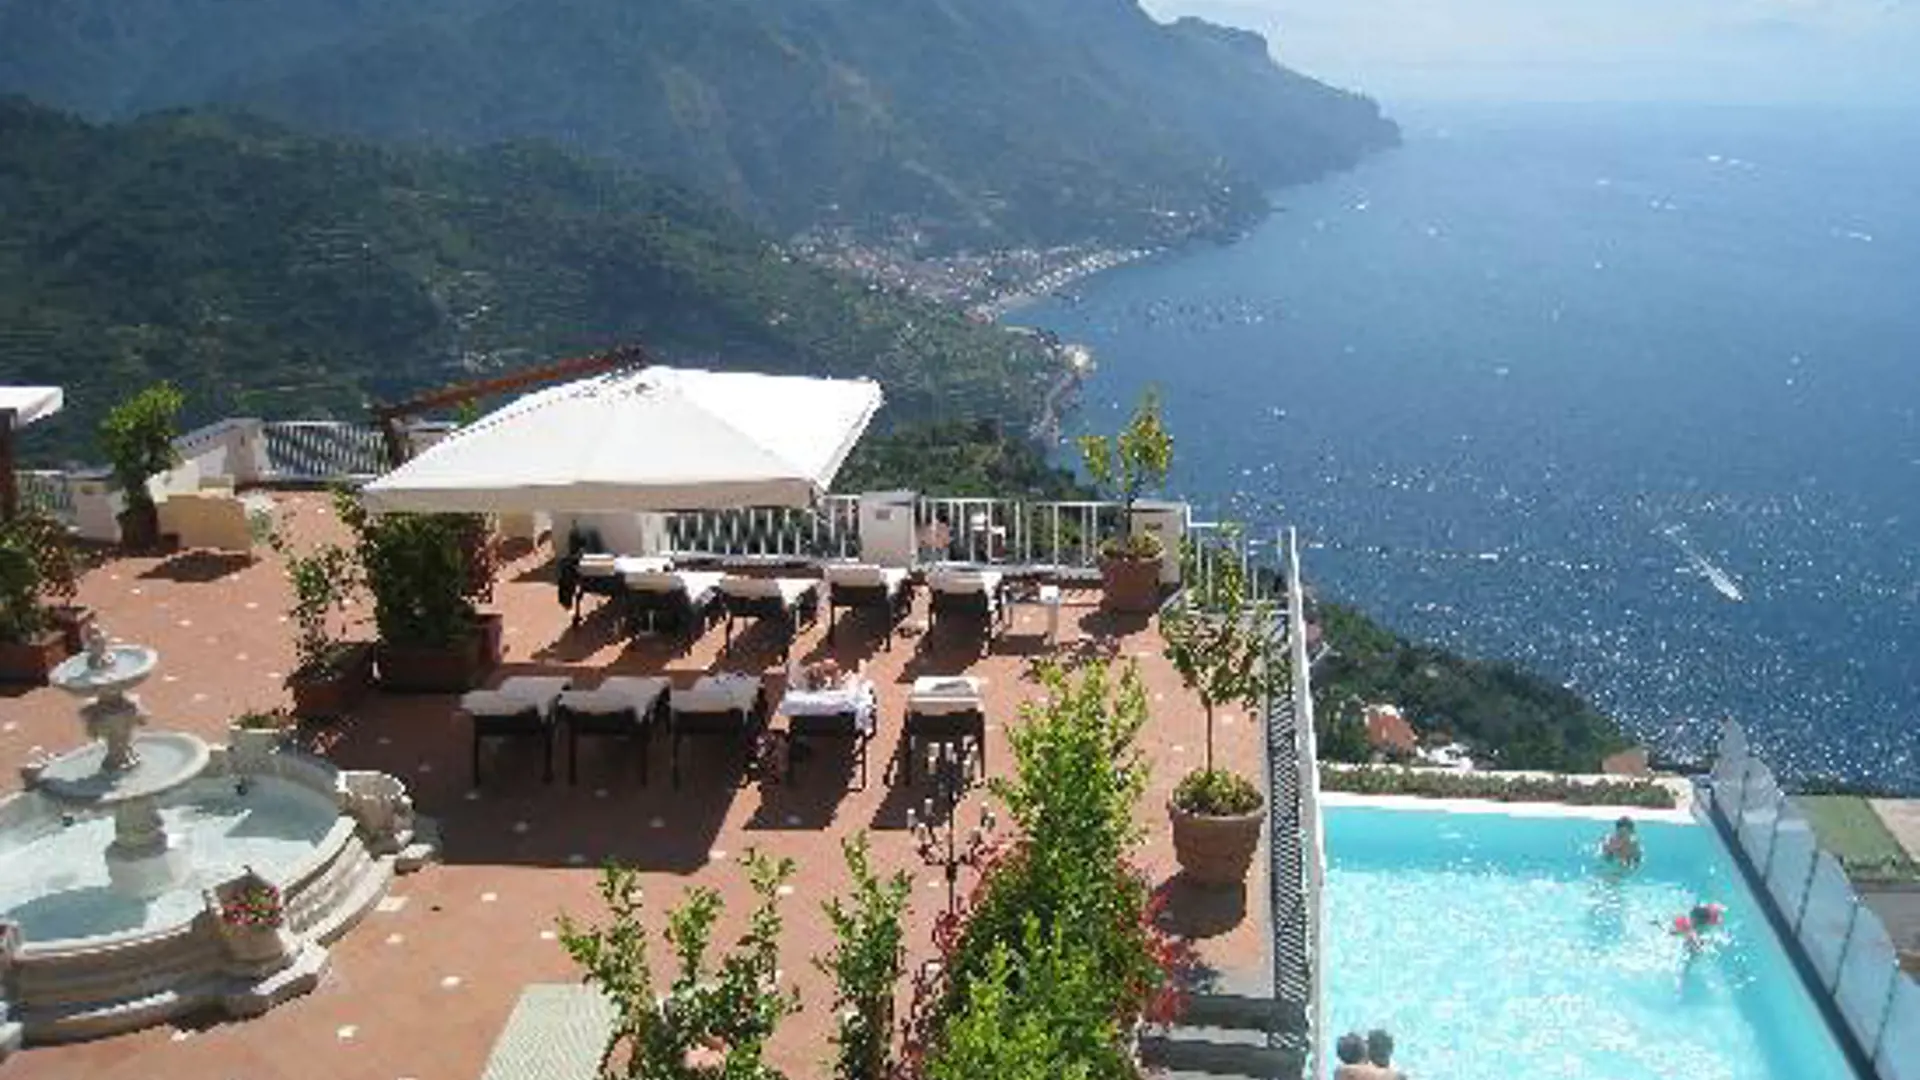 Hotel Villa Fraulo har terrasse og pool med en fantastisk udsigt